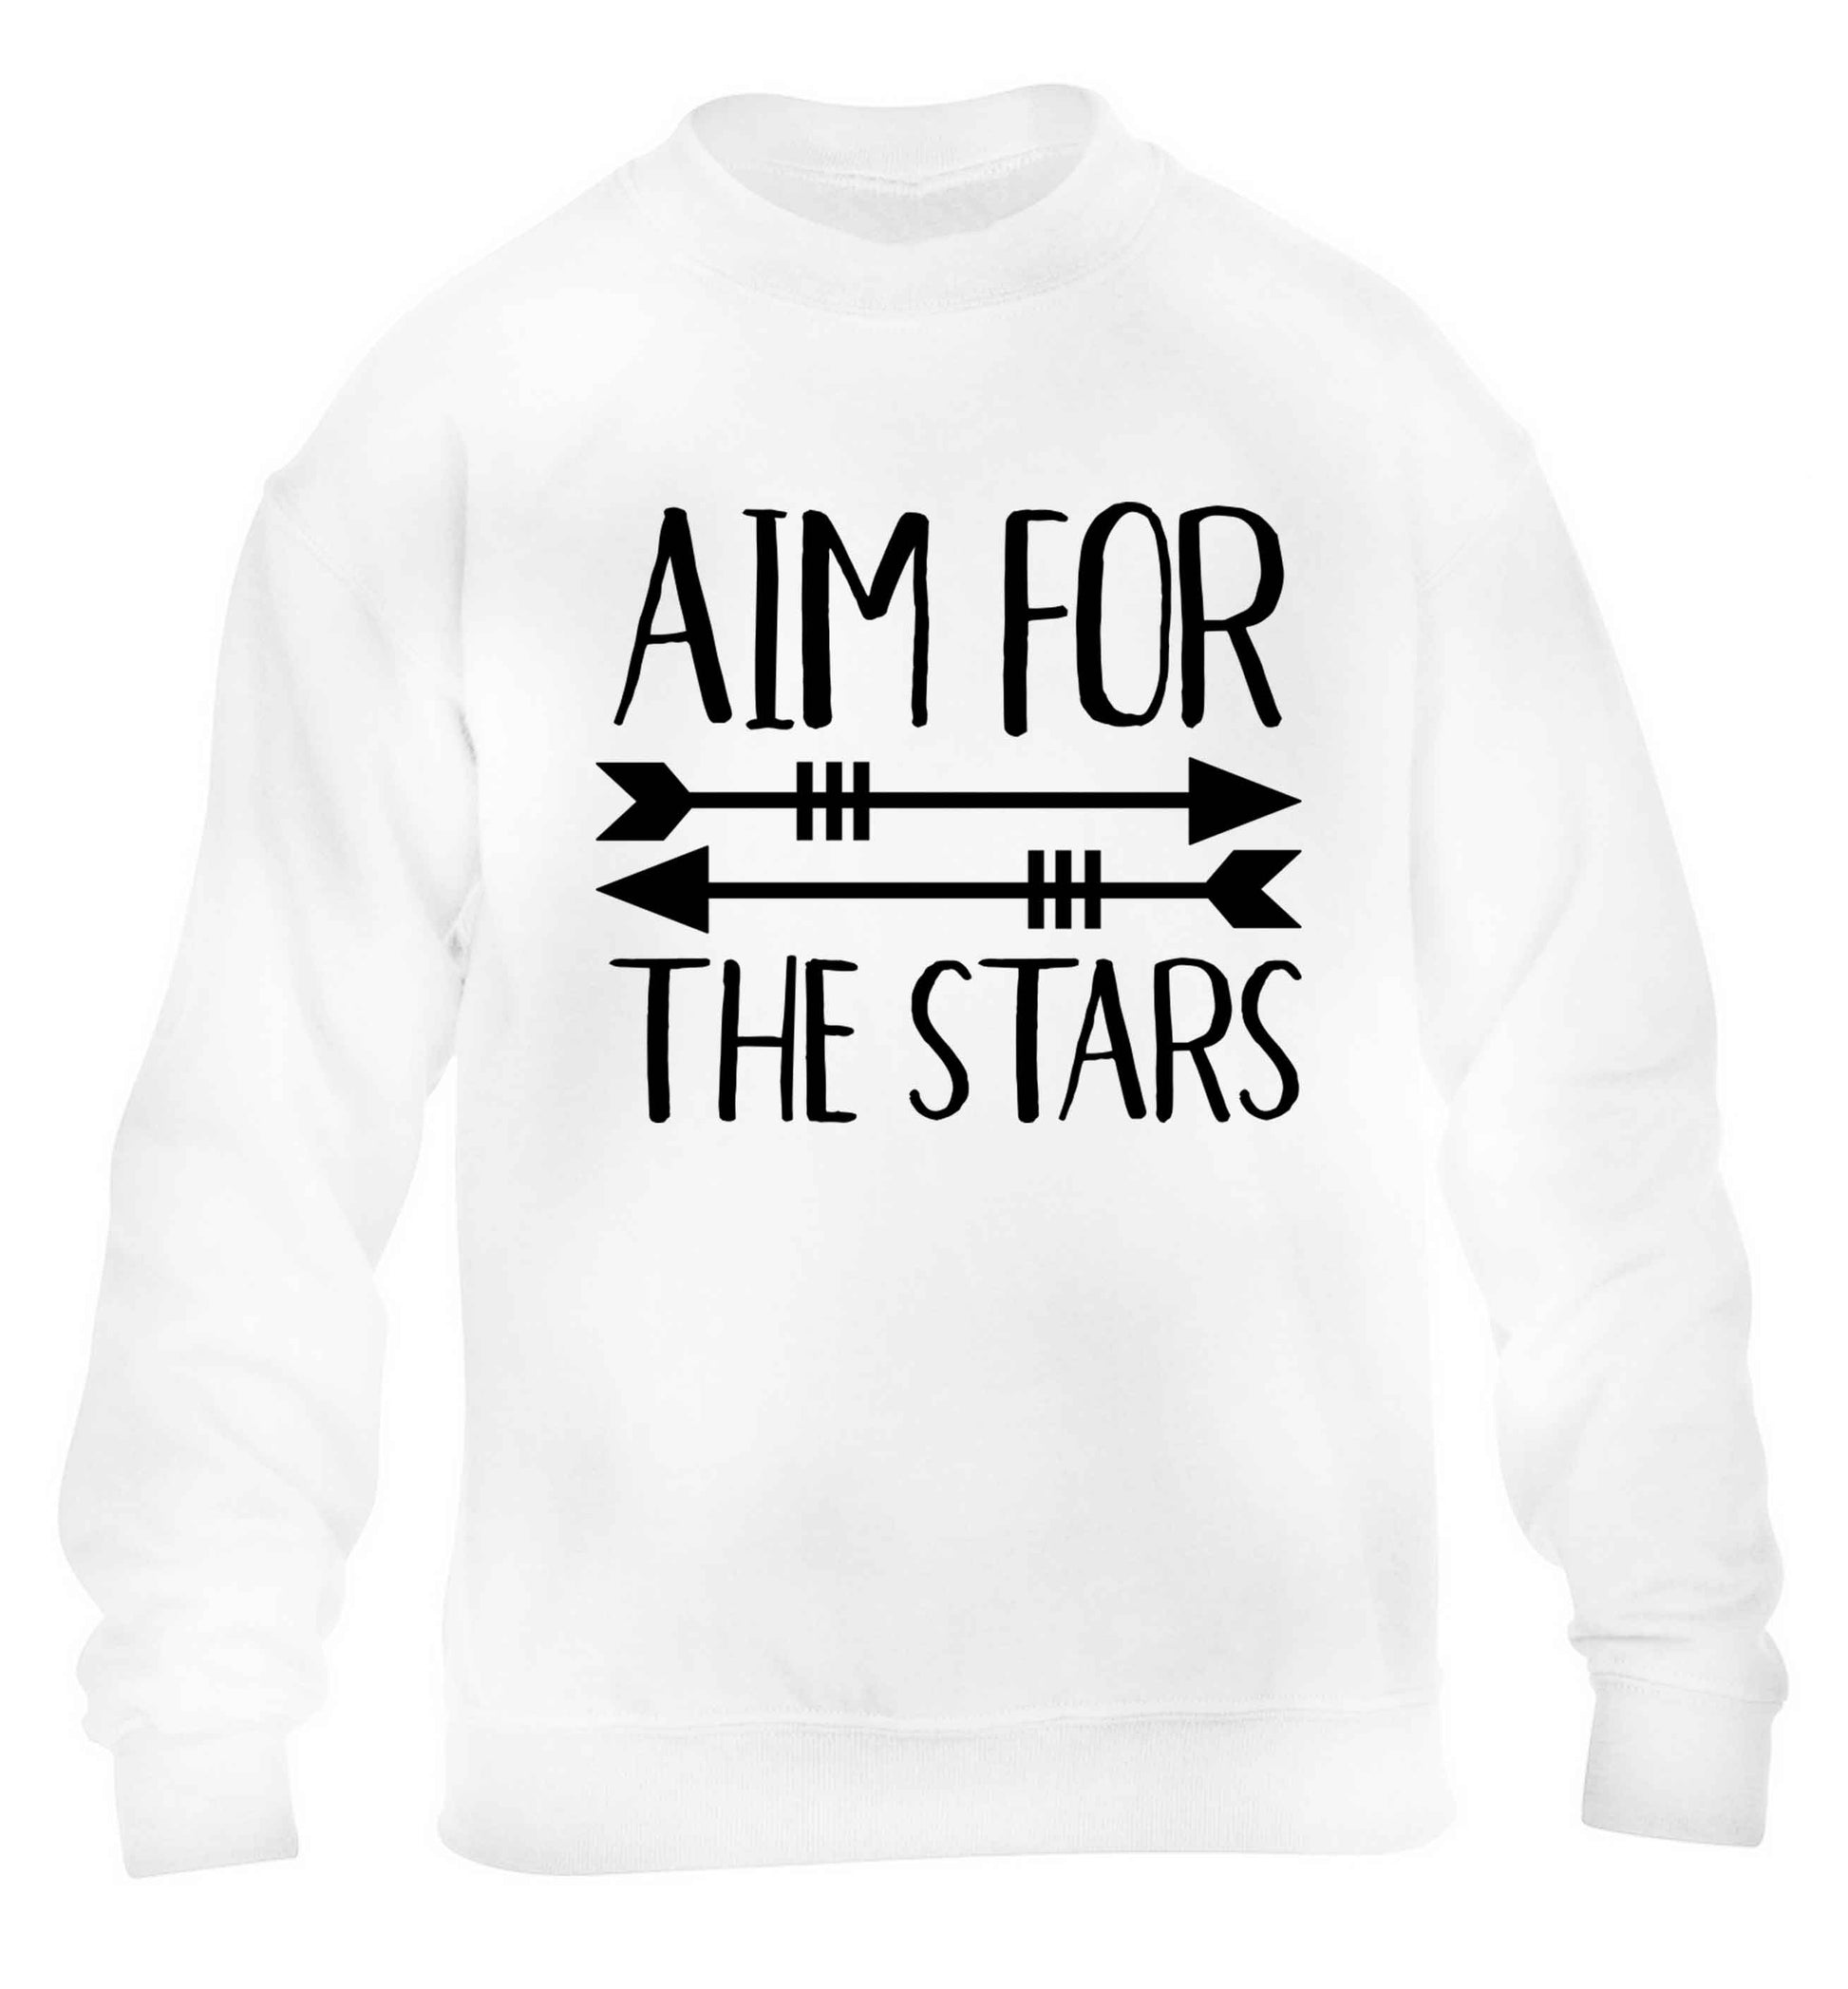 Aim for the stars children's white sweater 12-13 Years